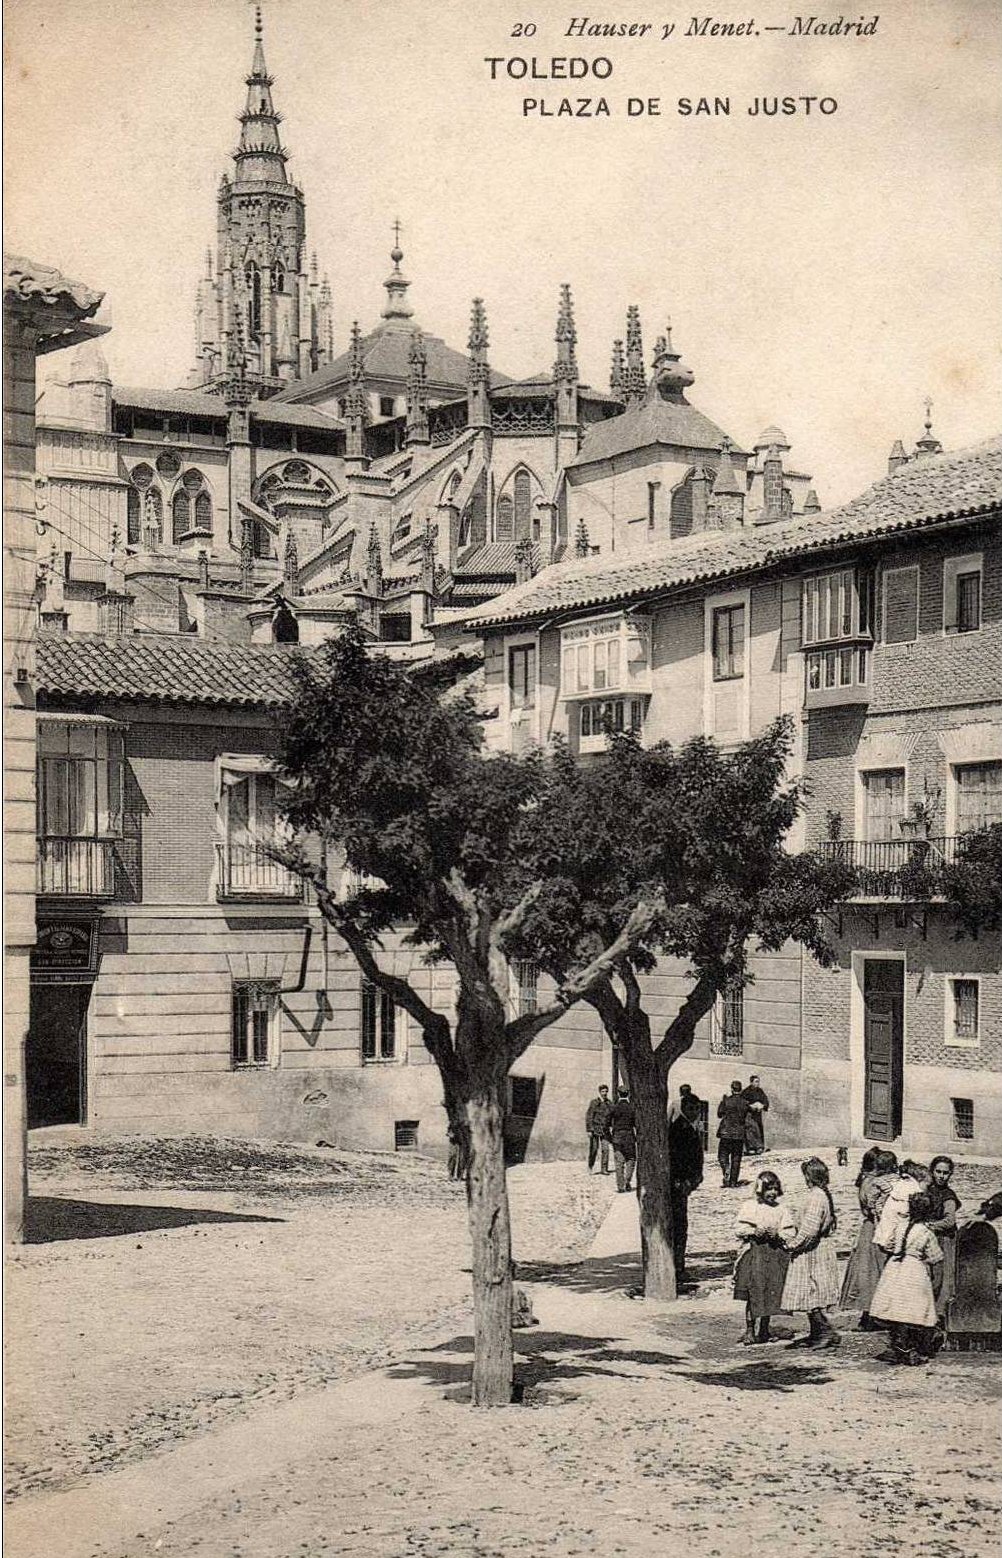 Plaza de San Justo hacia 1900. Fotografía de Hauser y Menet